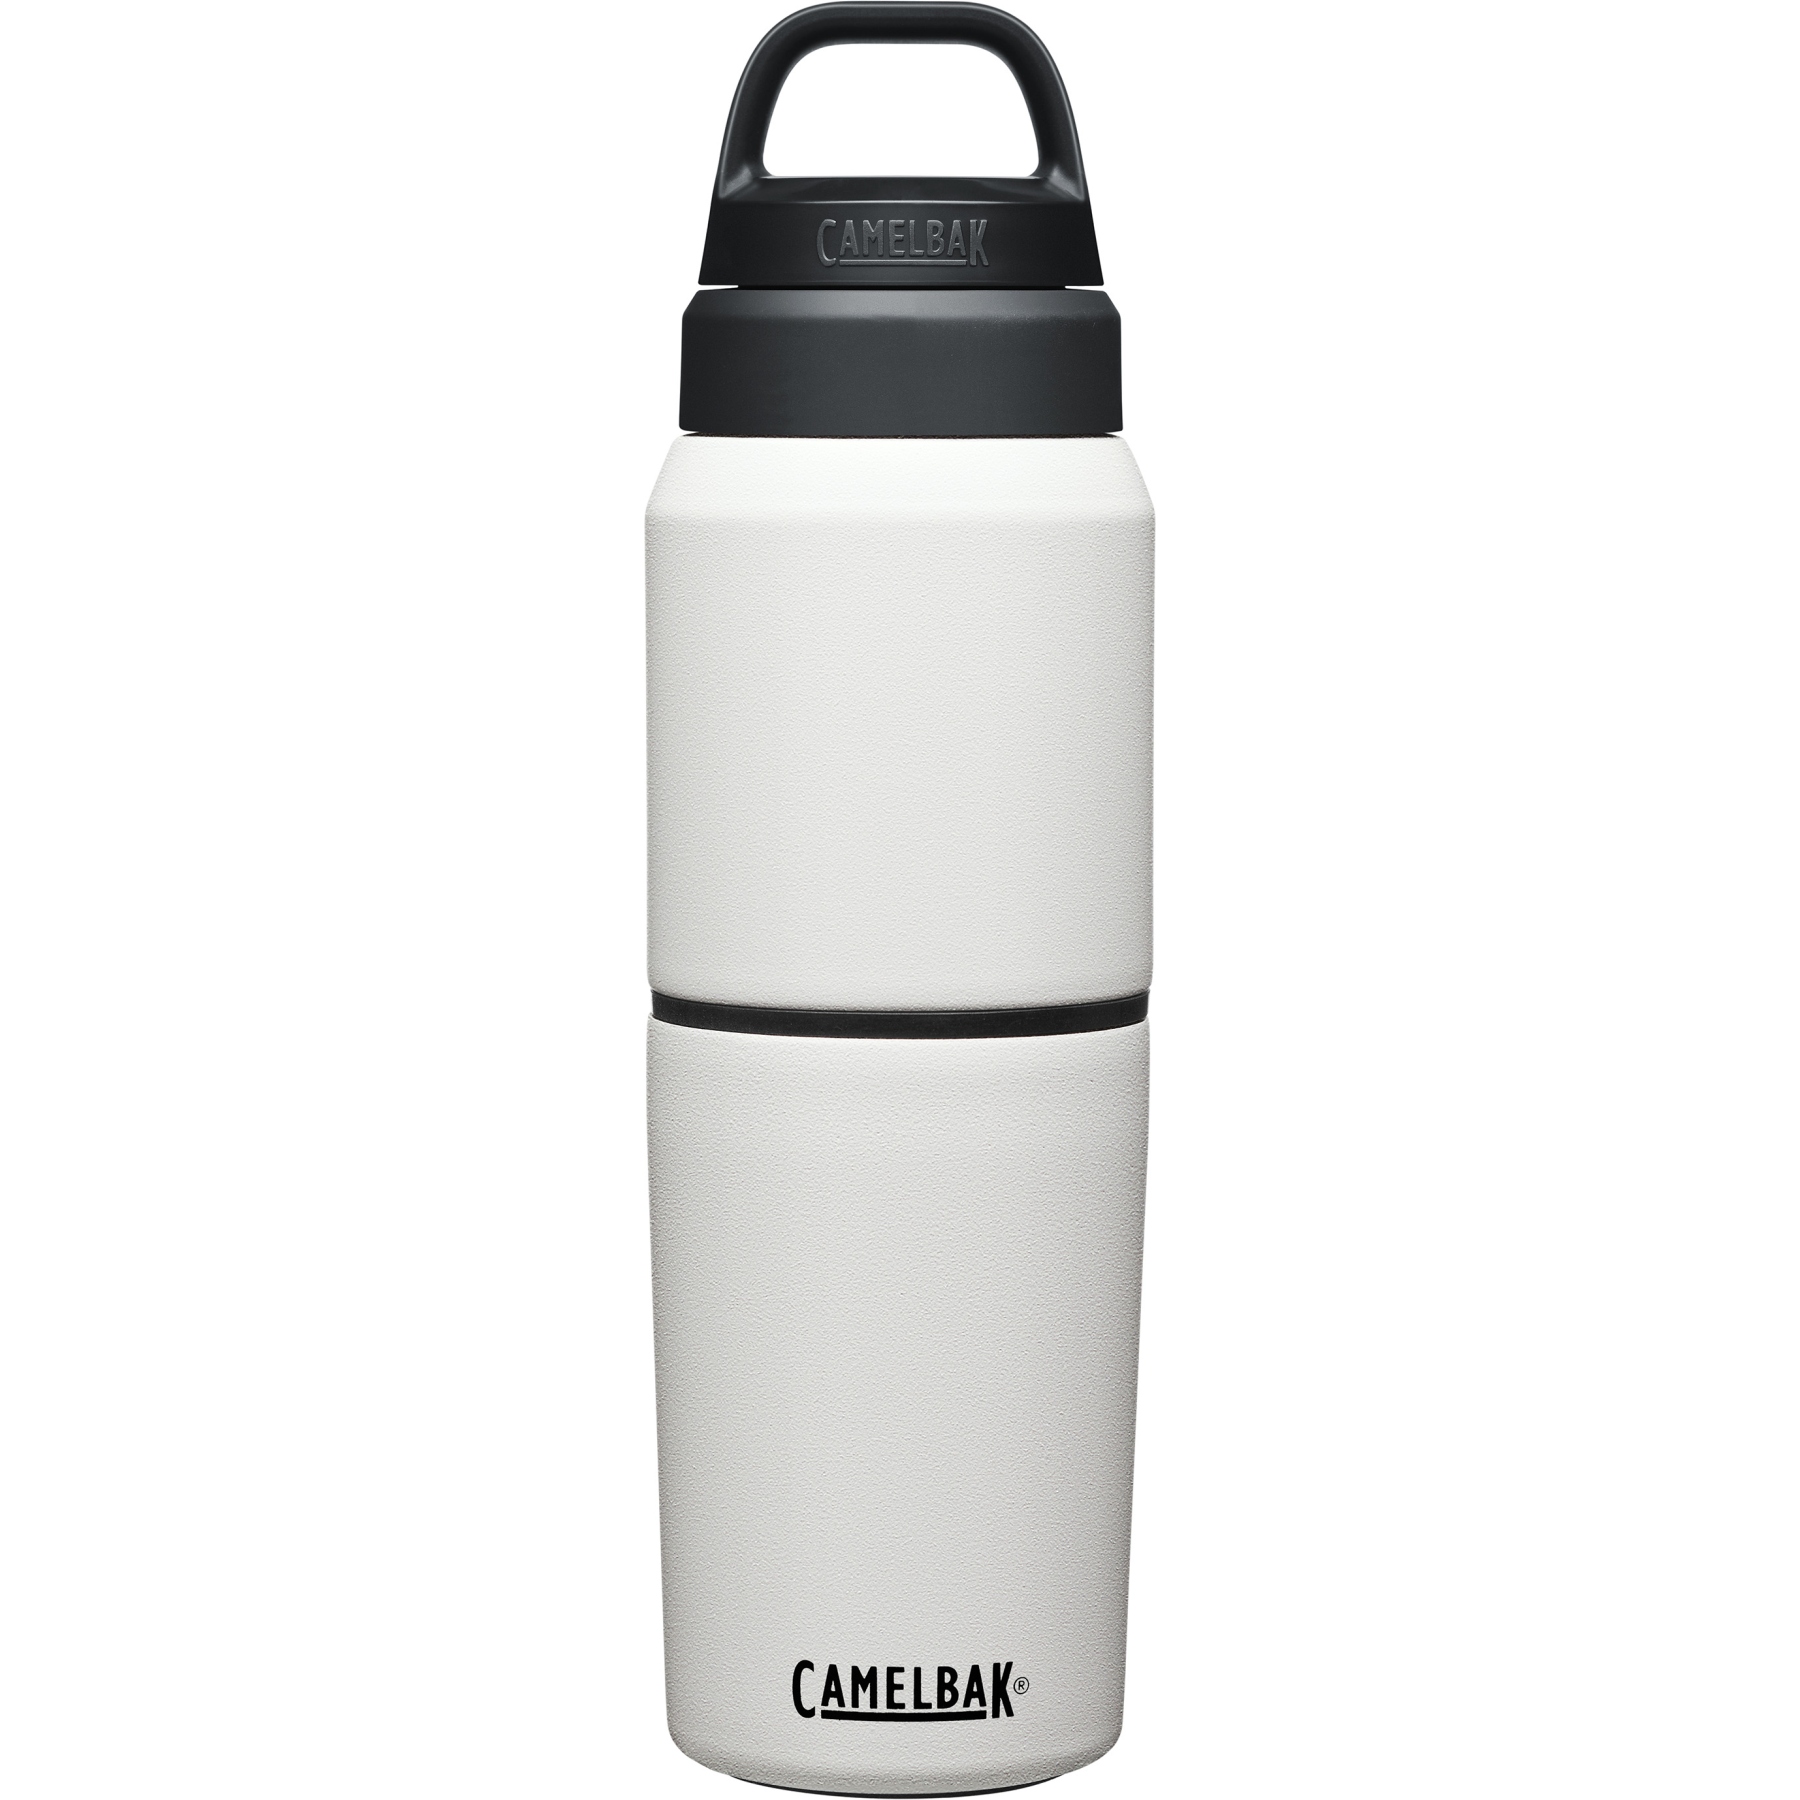 Produktbild von CamelBak Thermo Trinkflasche Multibev 500ml - weiß